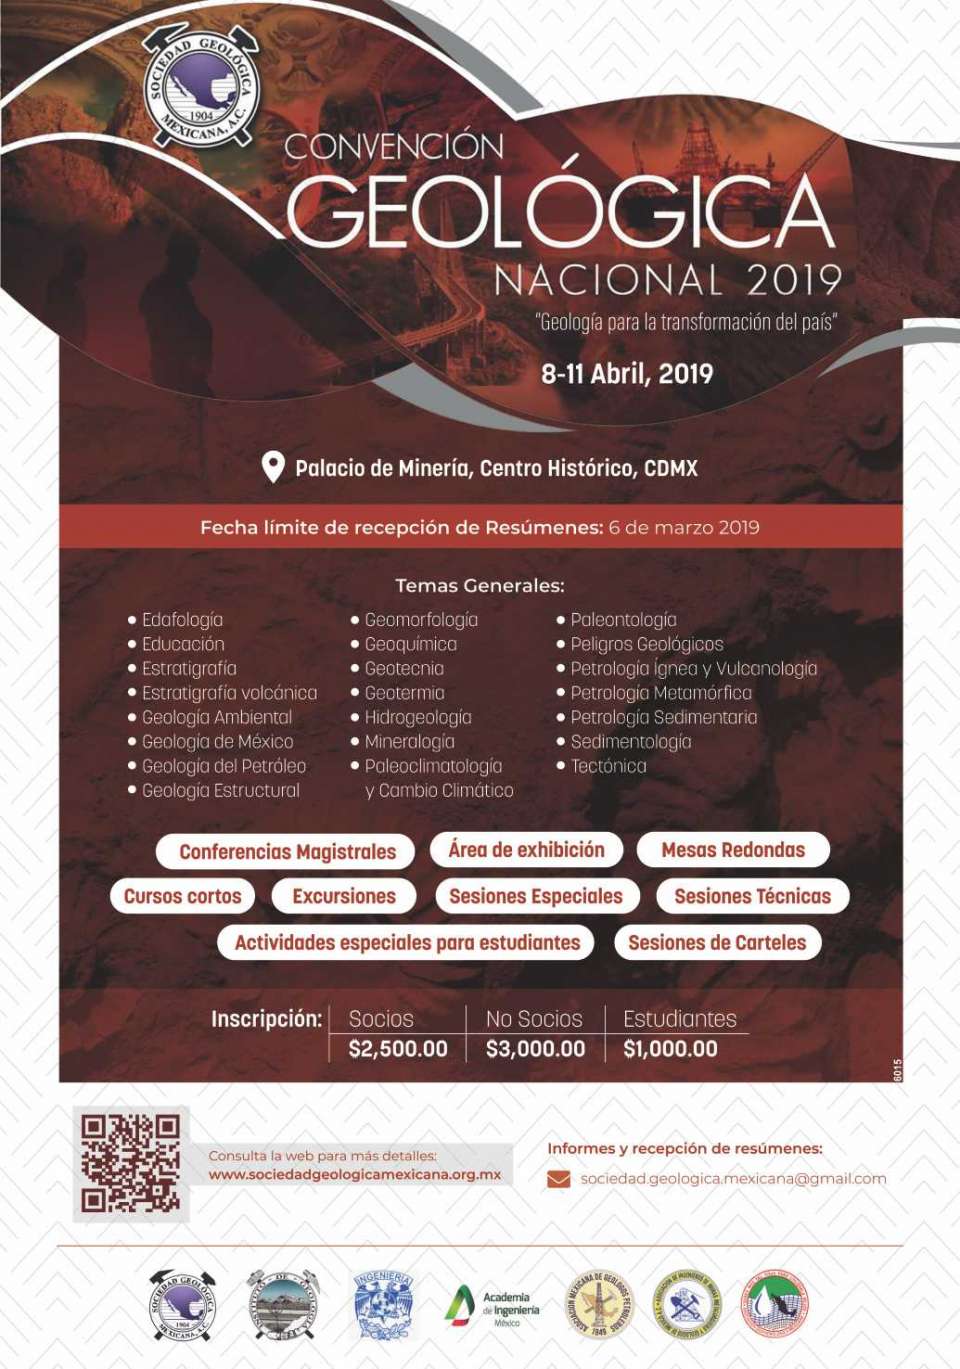 From 8 to 11 April 2019 at the Palacio de Mineria del Centro Historico, CDMX